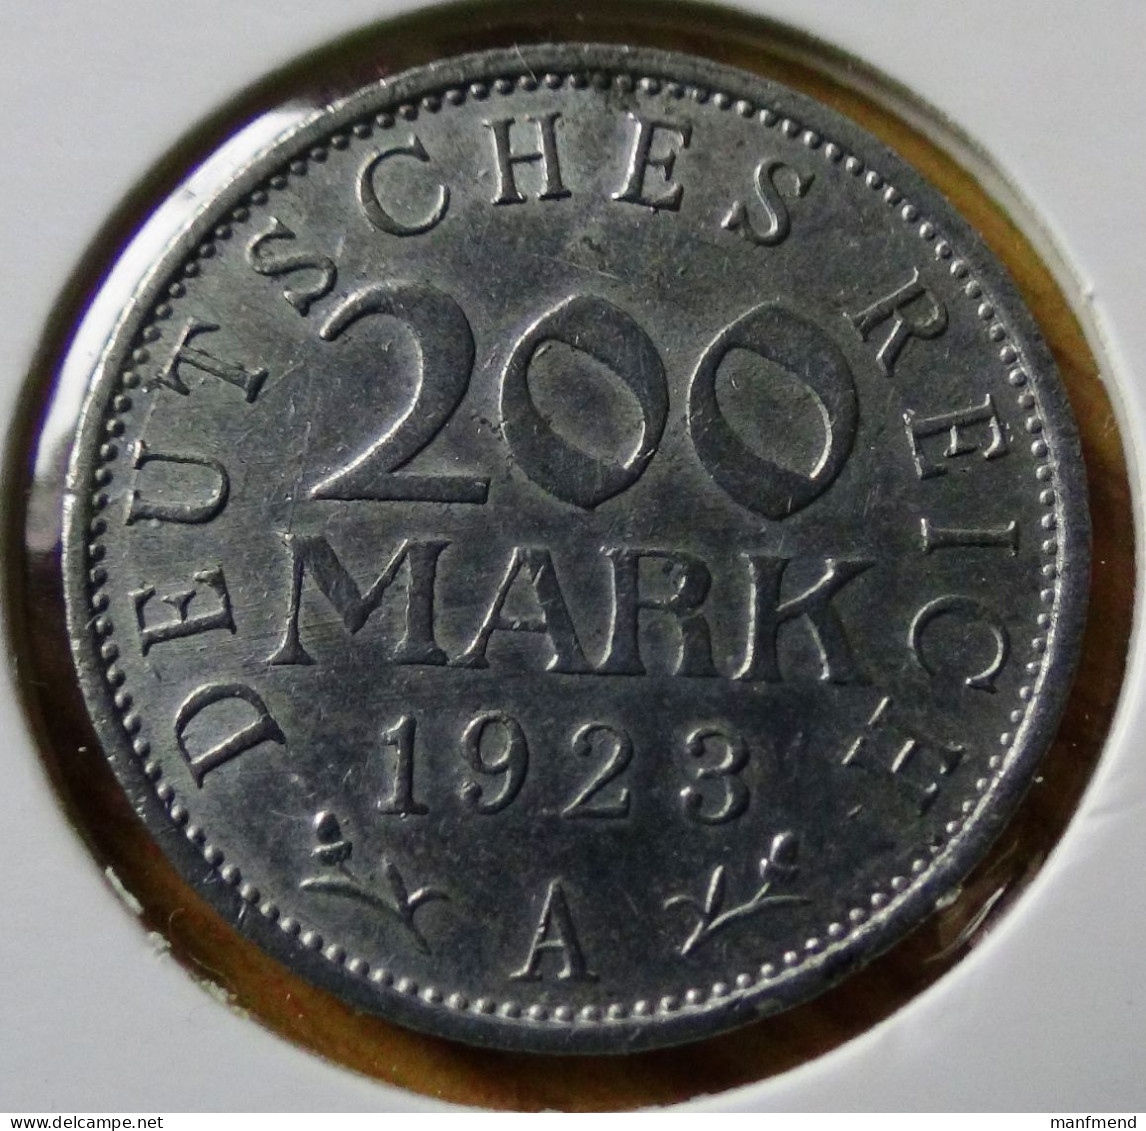 Germany - Weimarer Republik - 1923 - KM 35 - 200 Mark - Mint A / Berlin - XF - Look Scans - 200 & 500 Mark